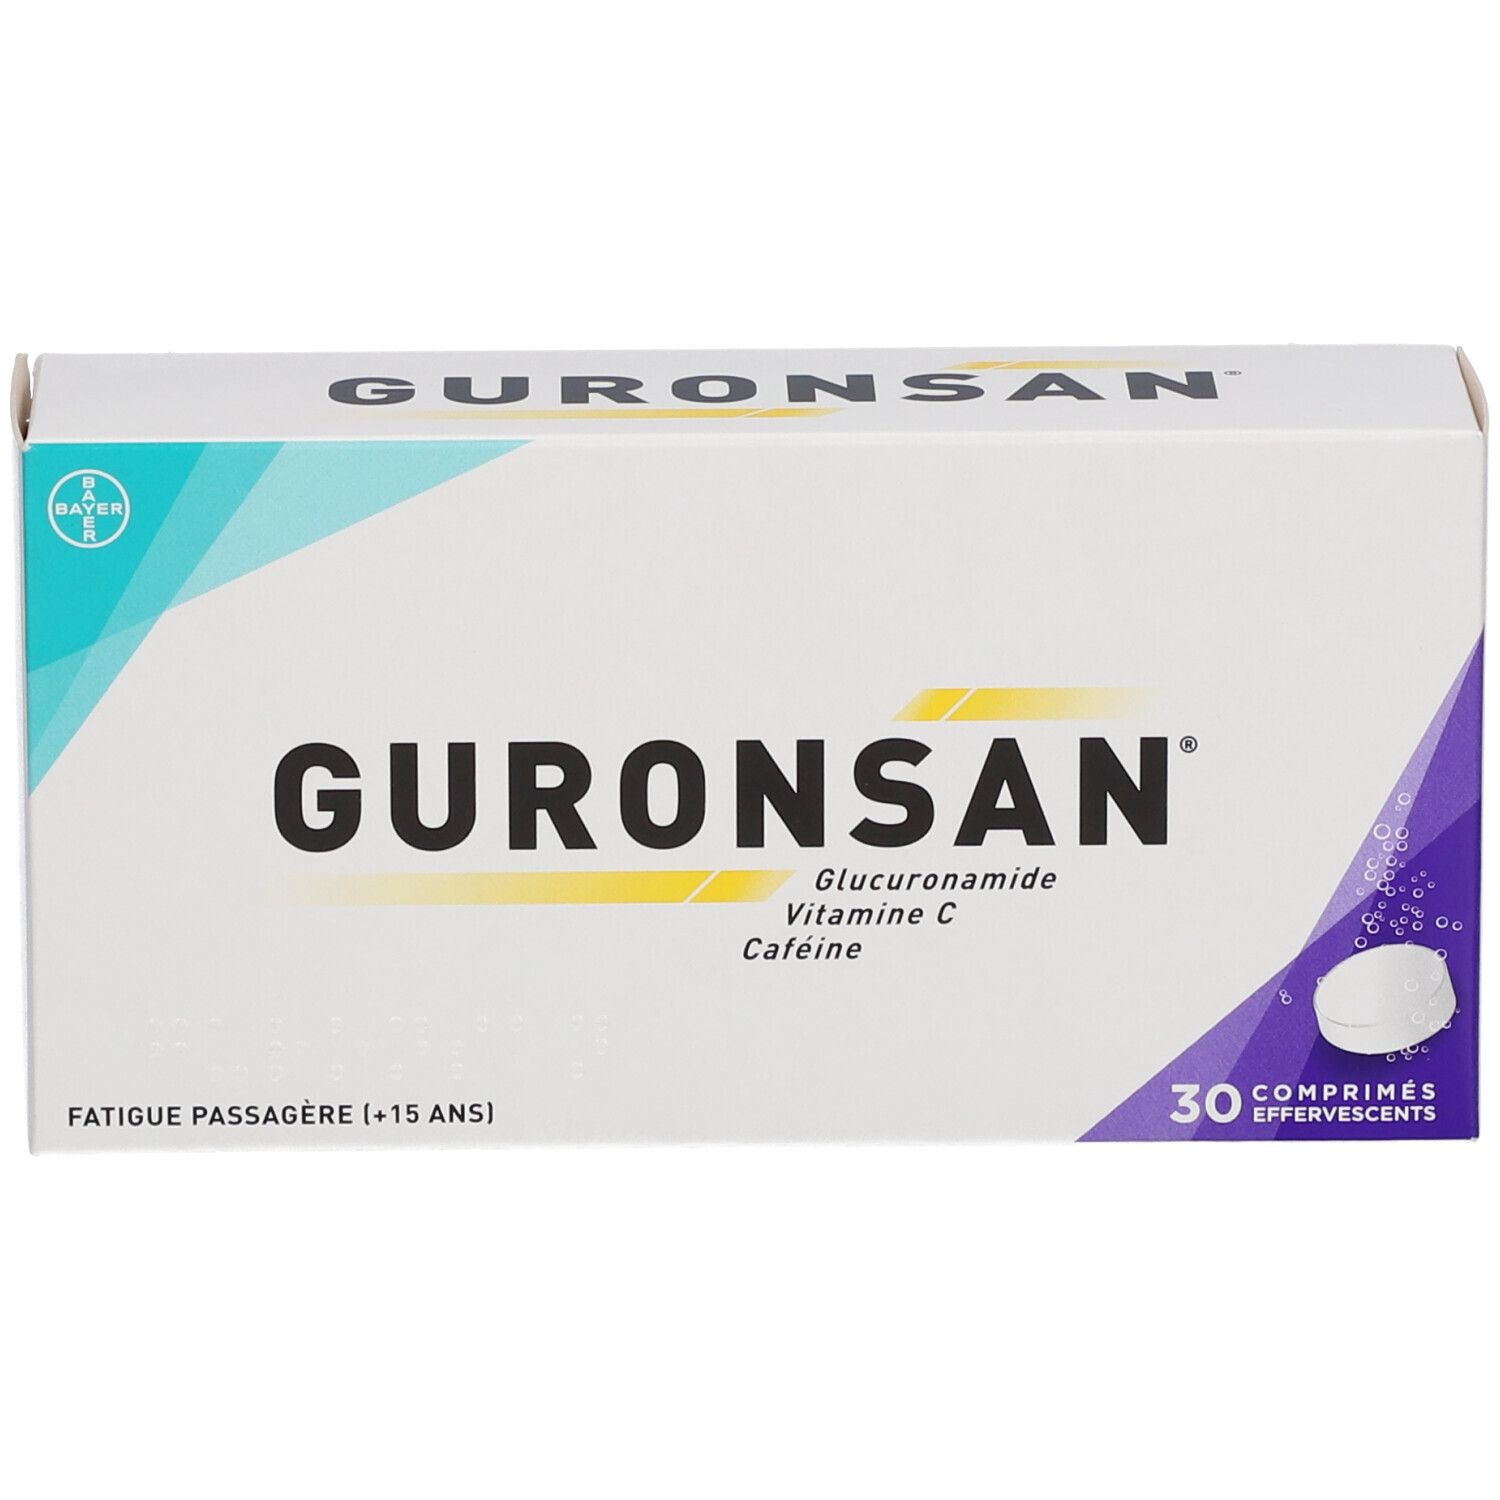 Guronsan - 30 Comprimés